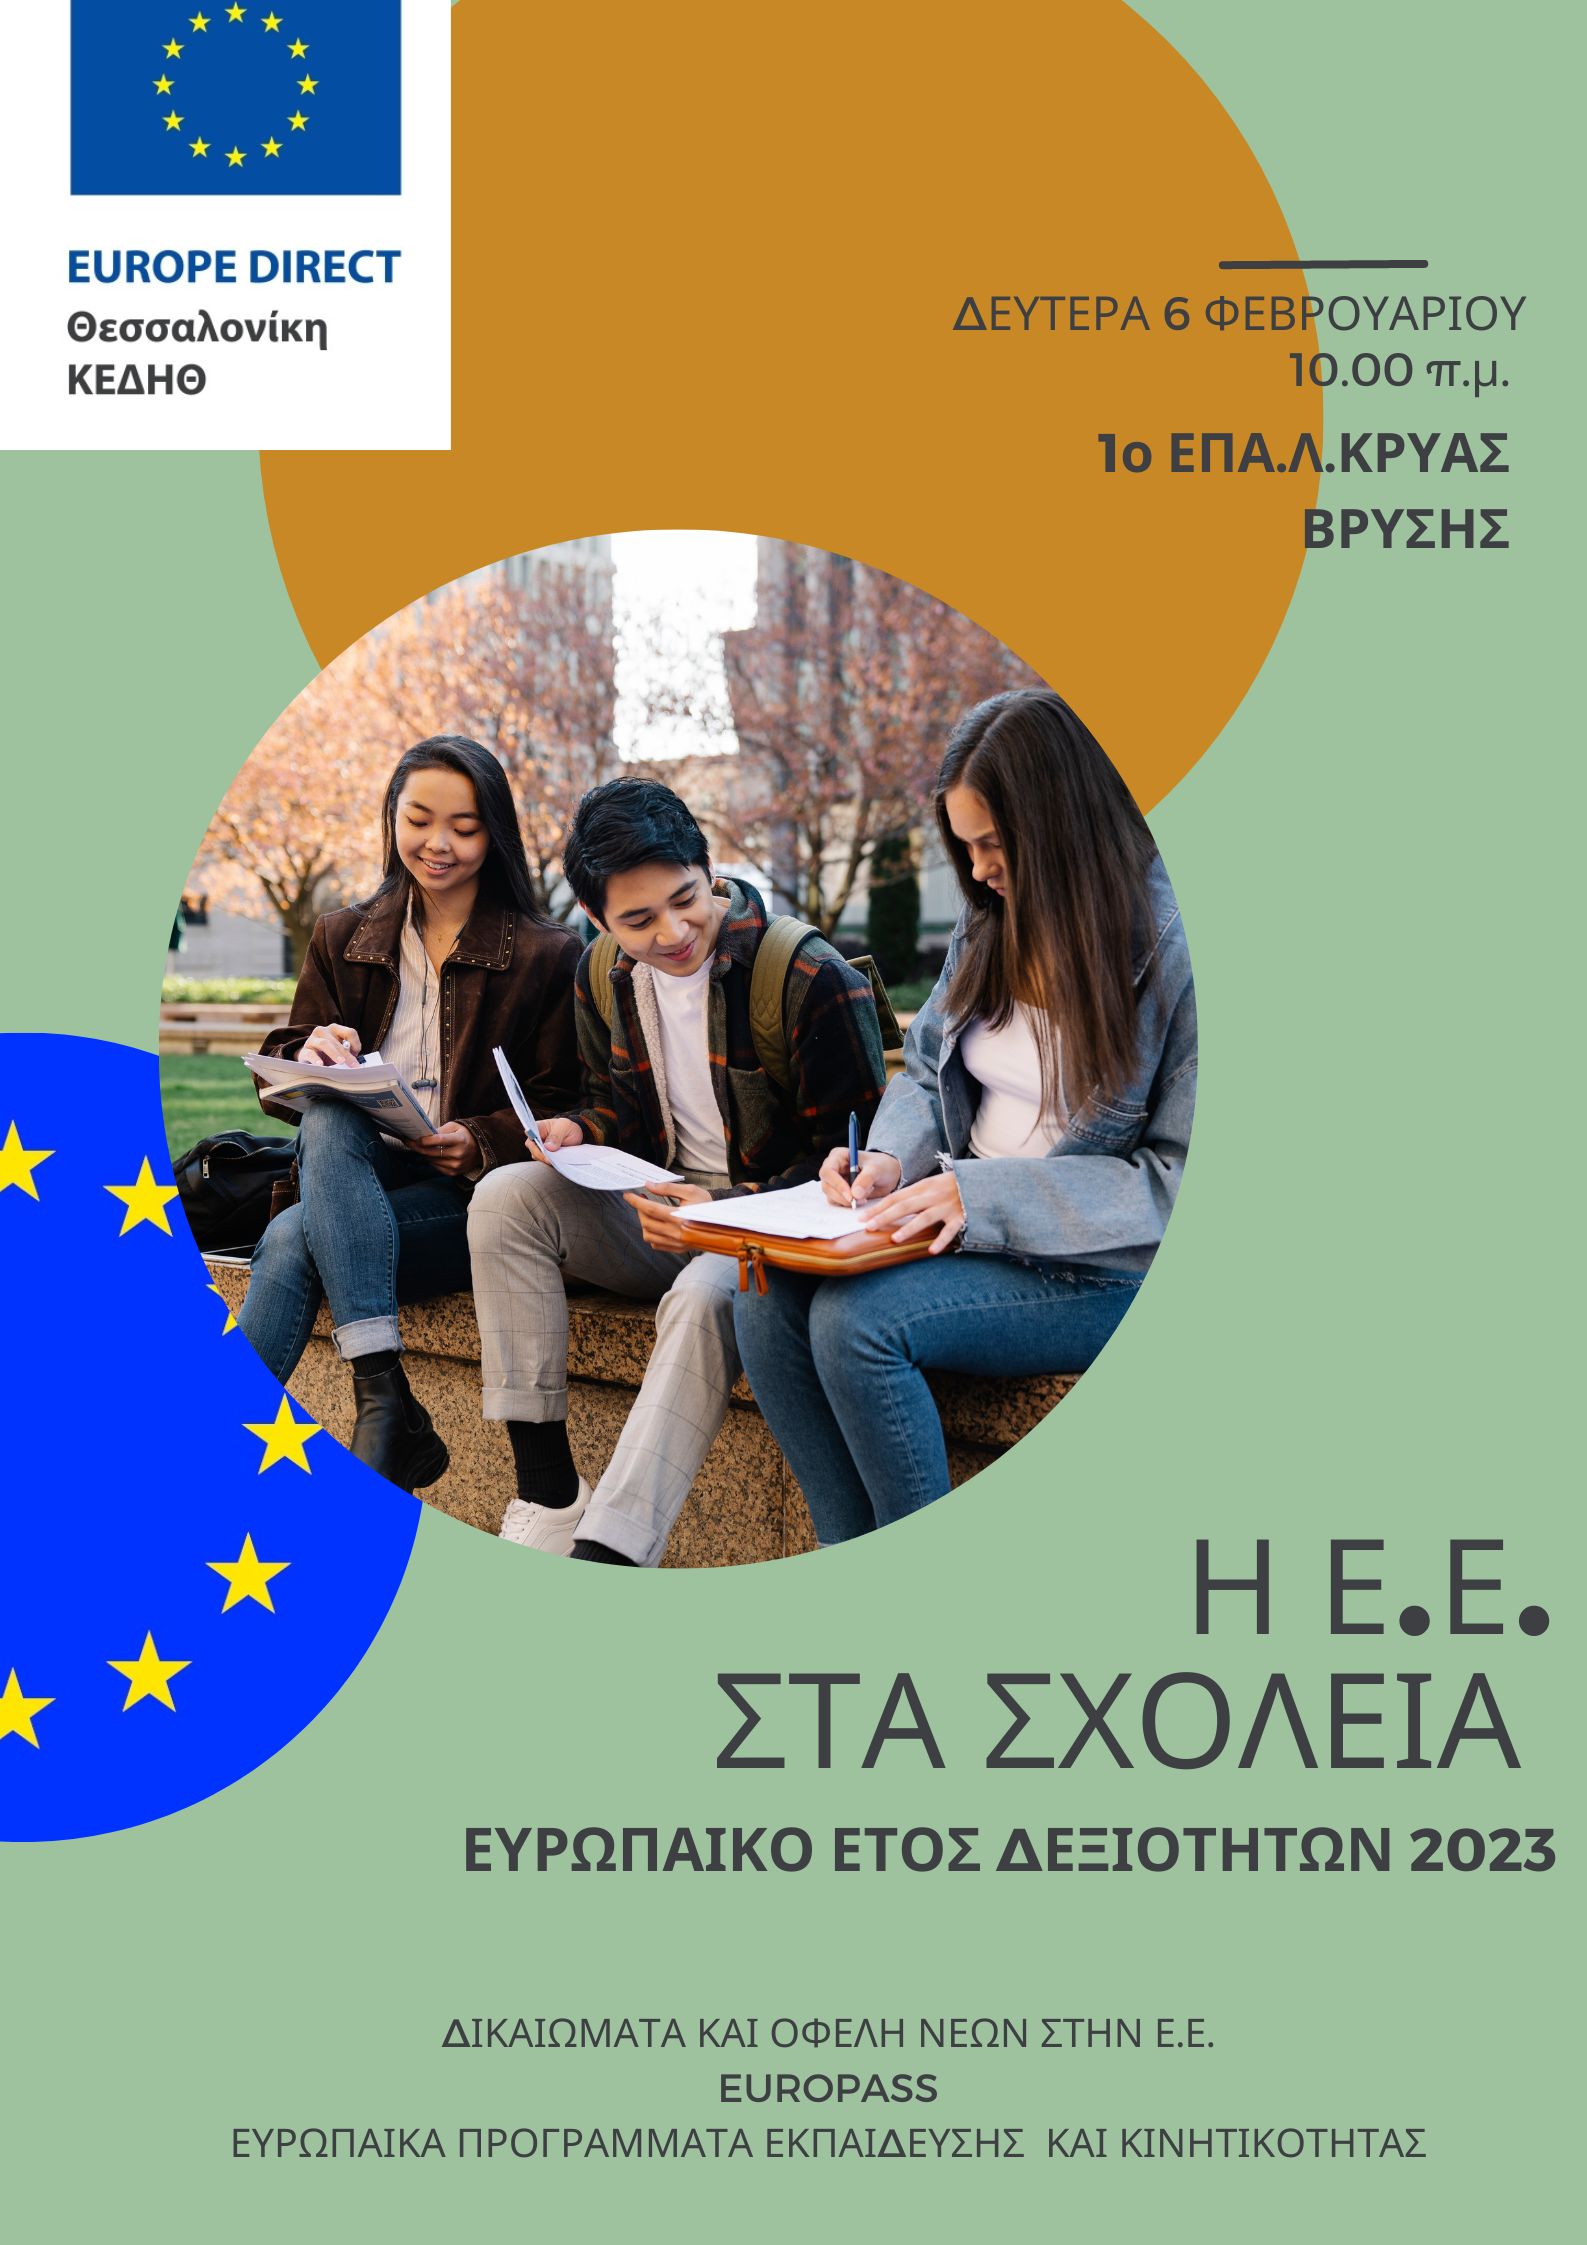 Ευρωπαϊκό Έτος Δεξιοτήτων 2023: Δικαιώματα και οφέλη νέων στην ΕΕ